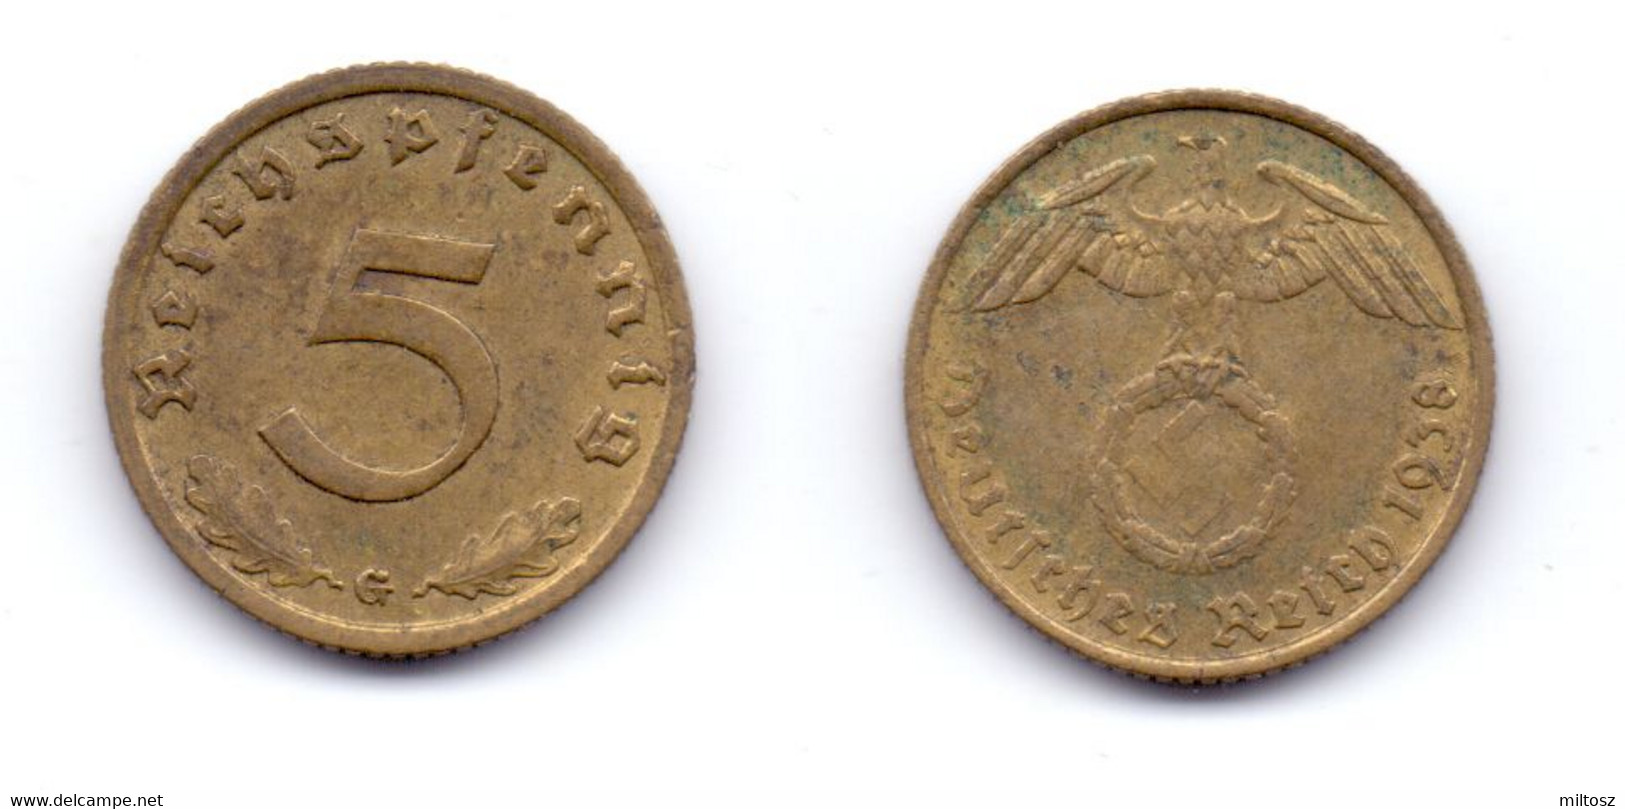 Germany 5 Reichspfennig 1938 G - 5 Reichspfennig